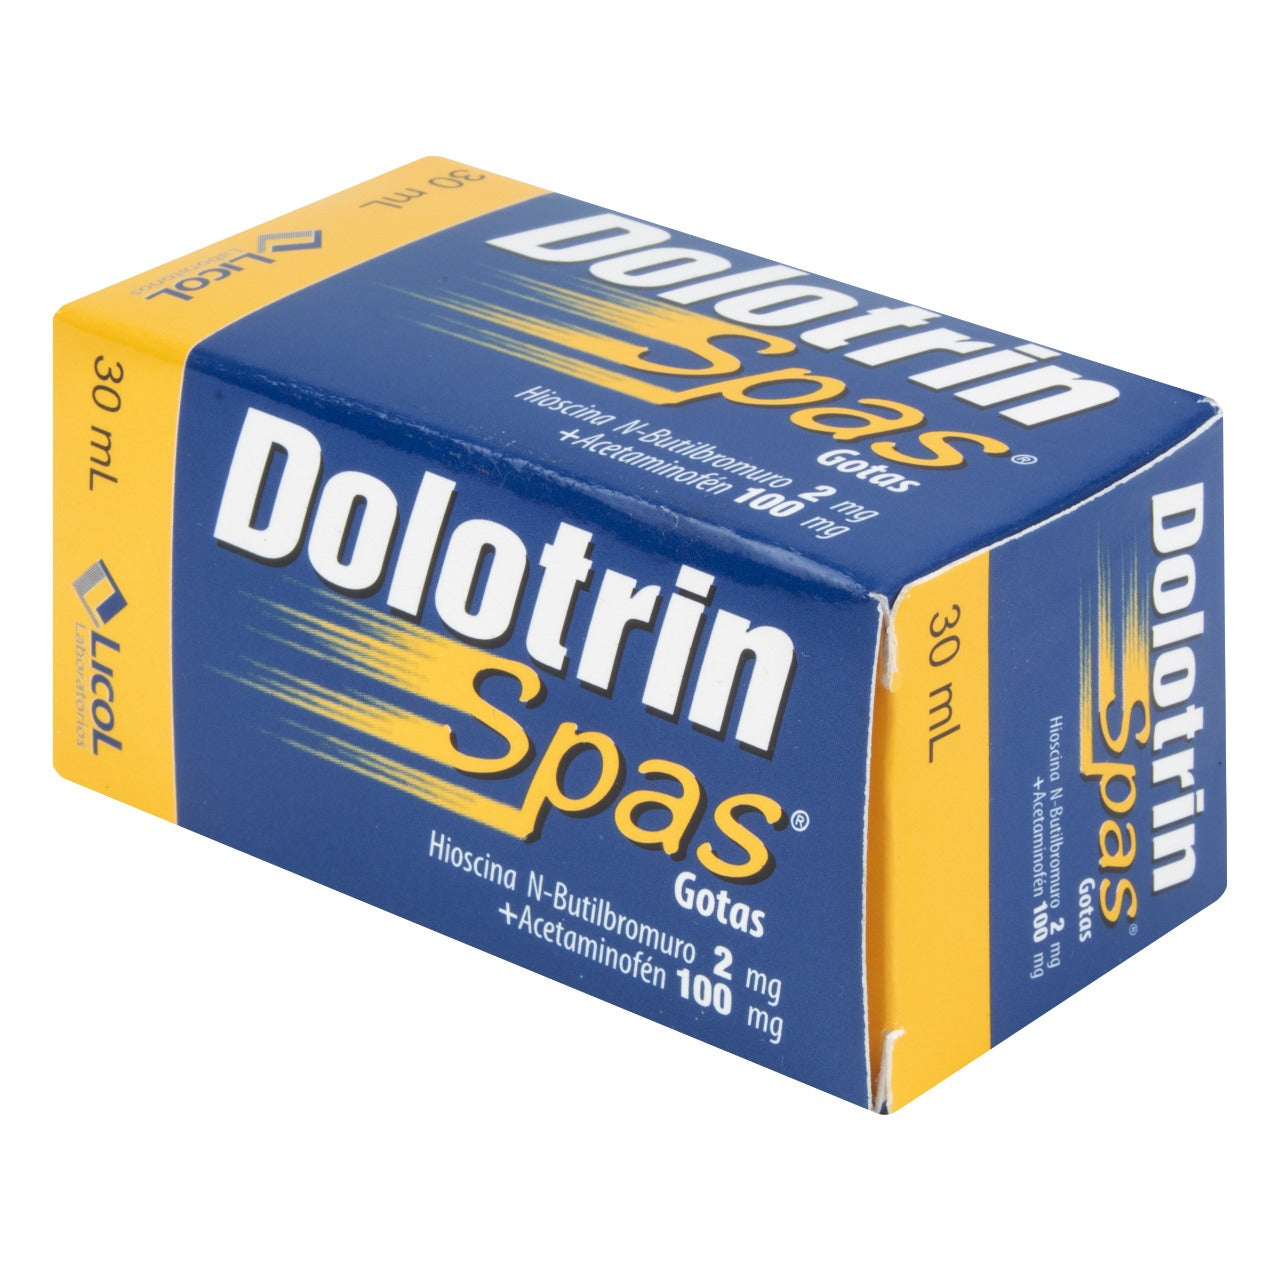 DOLOTRIN SPAS GOTAS 30 ML (CG15%)